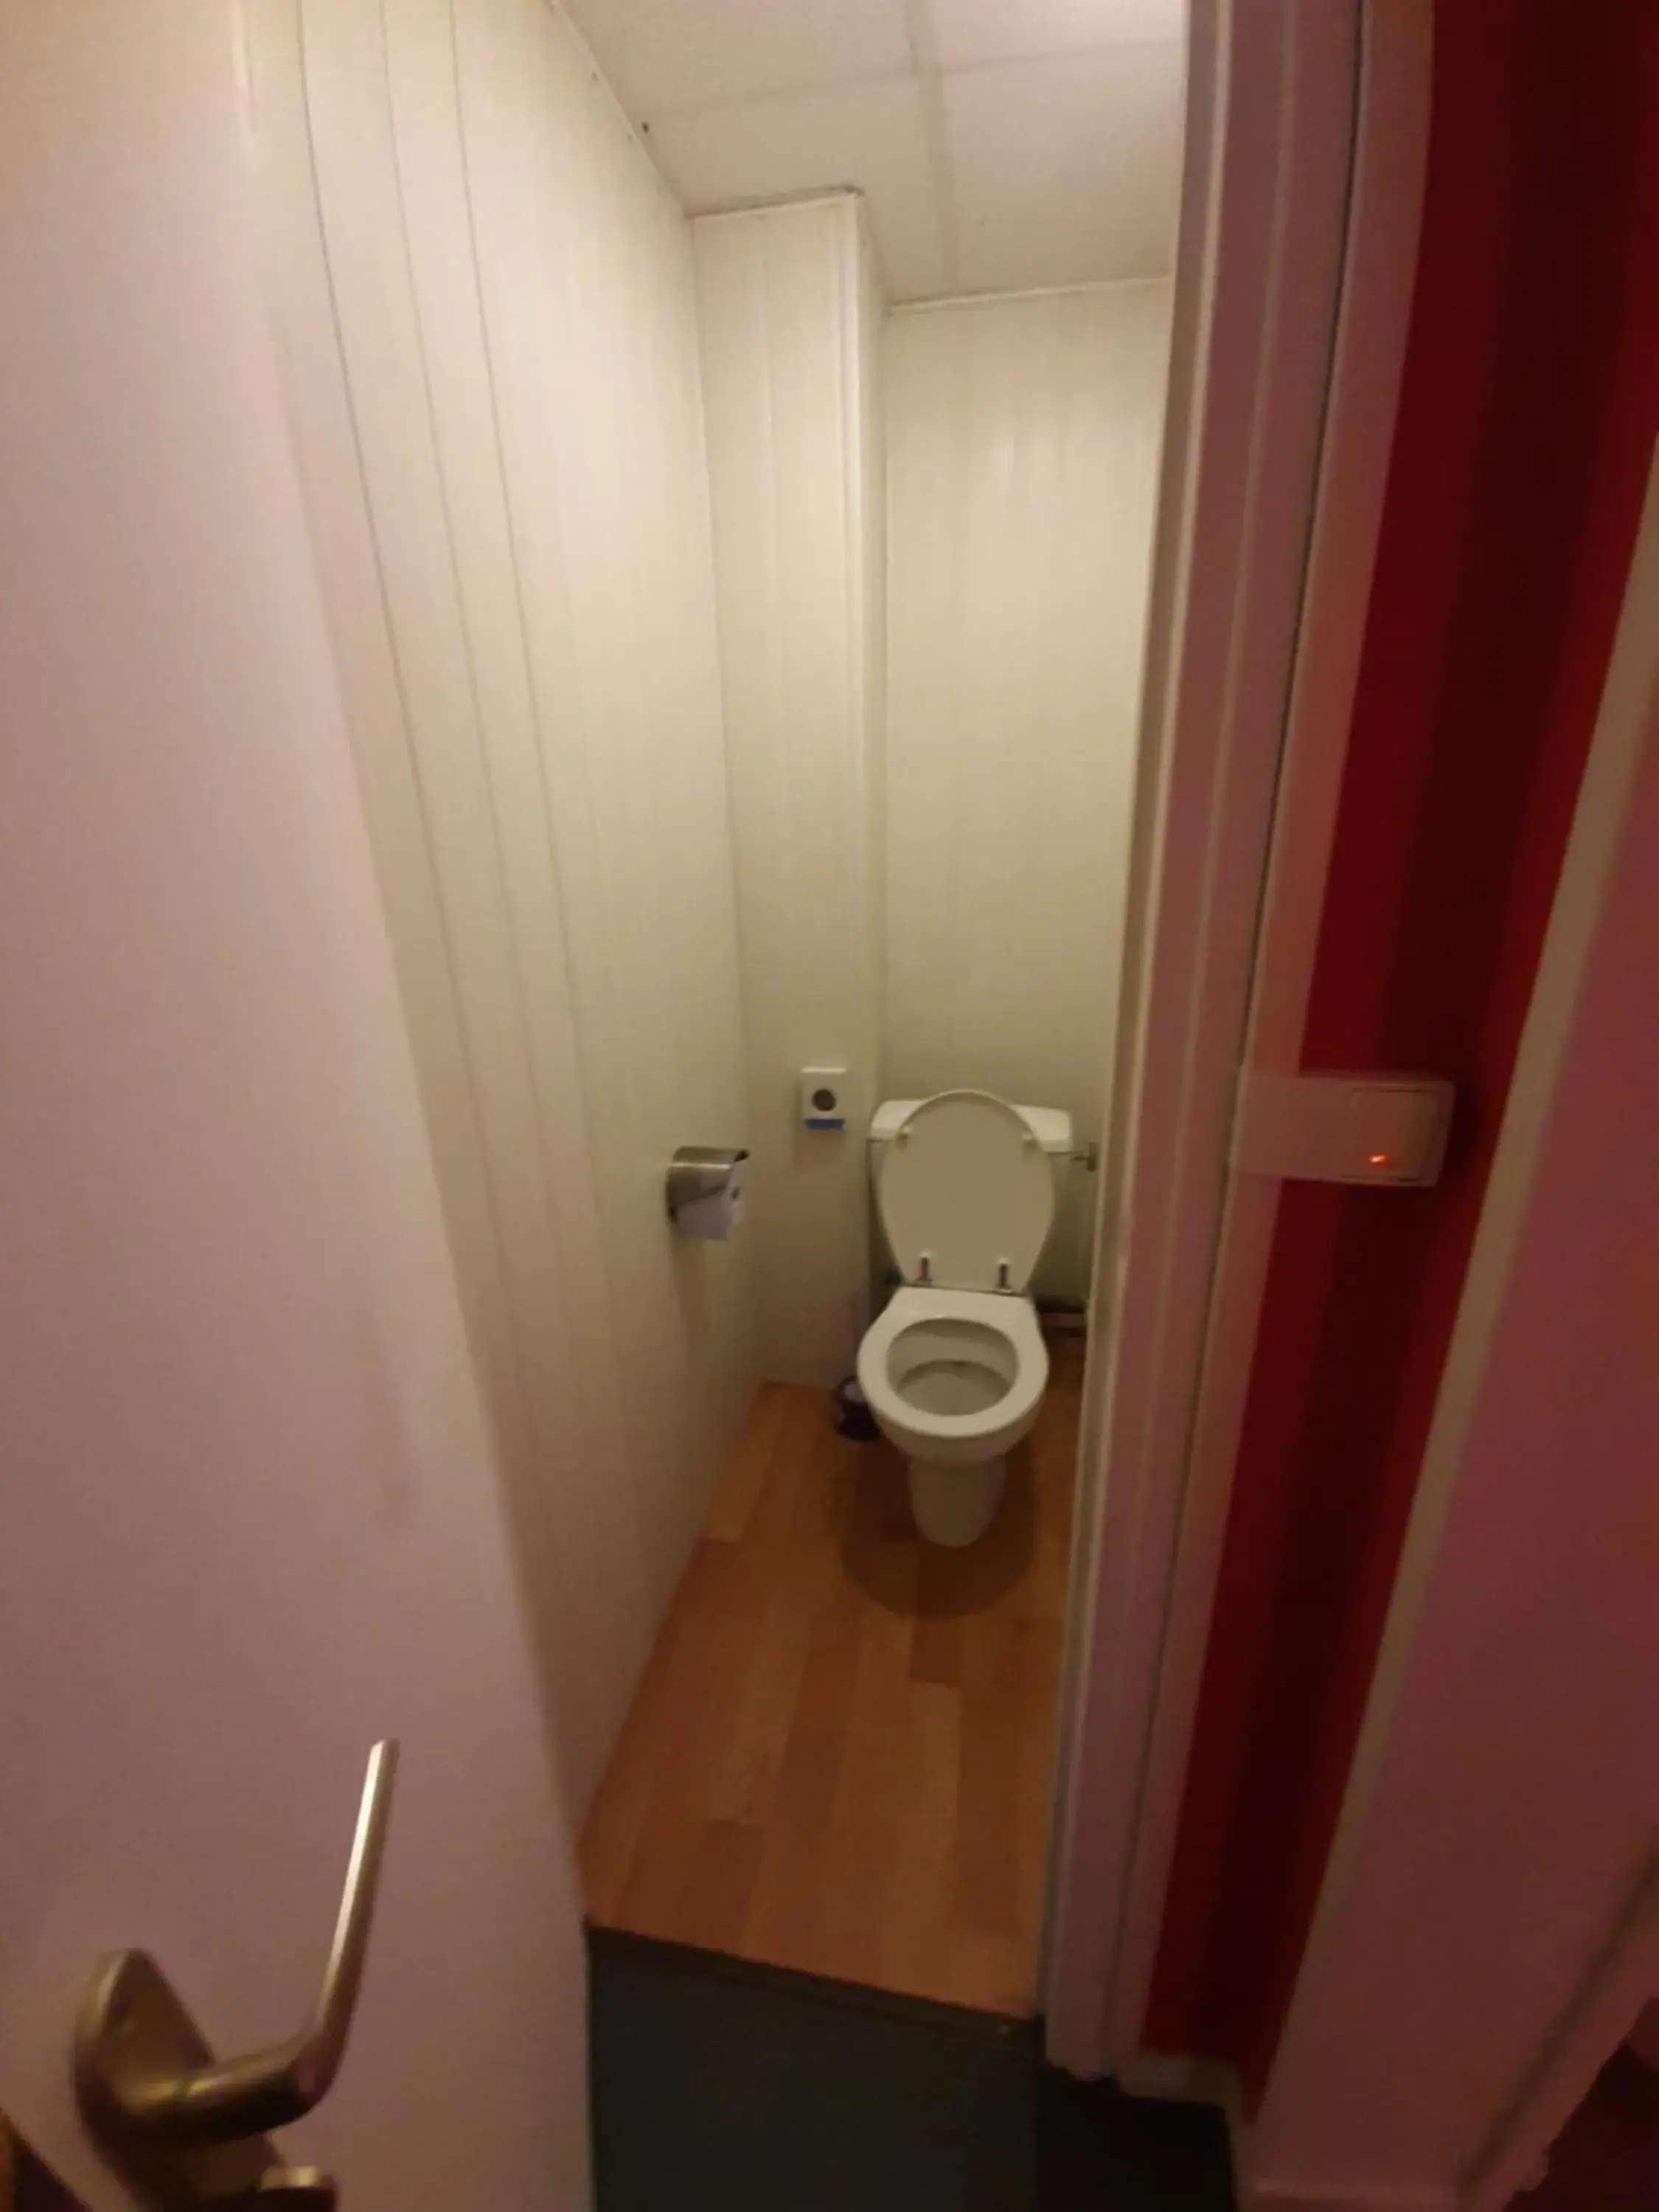 Bathroom in Hotel du Cygne